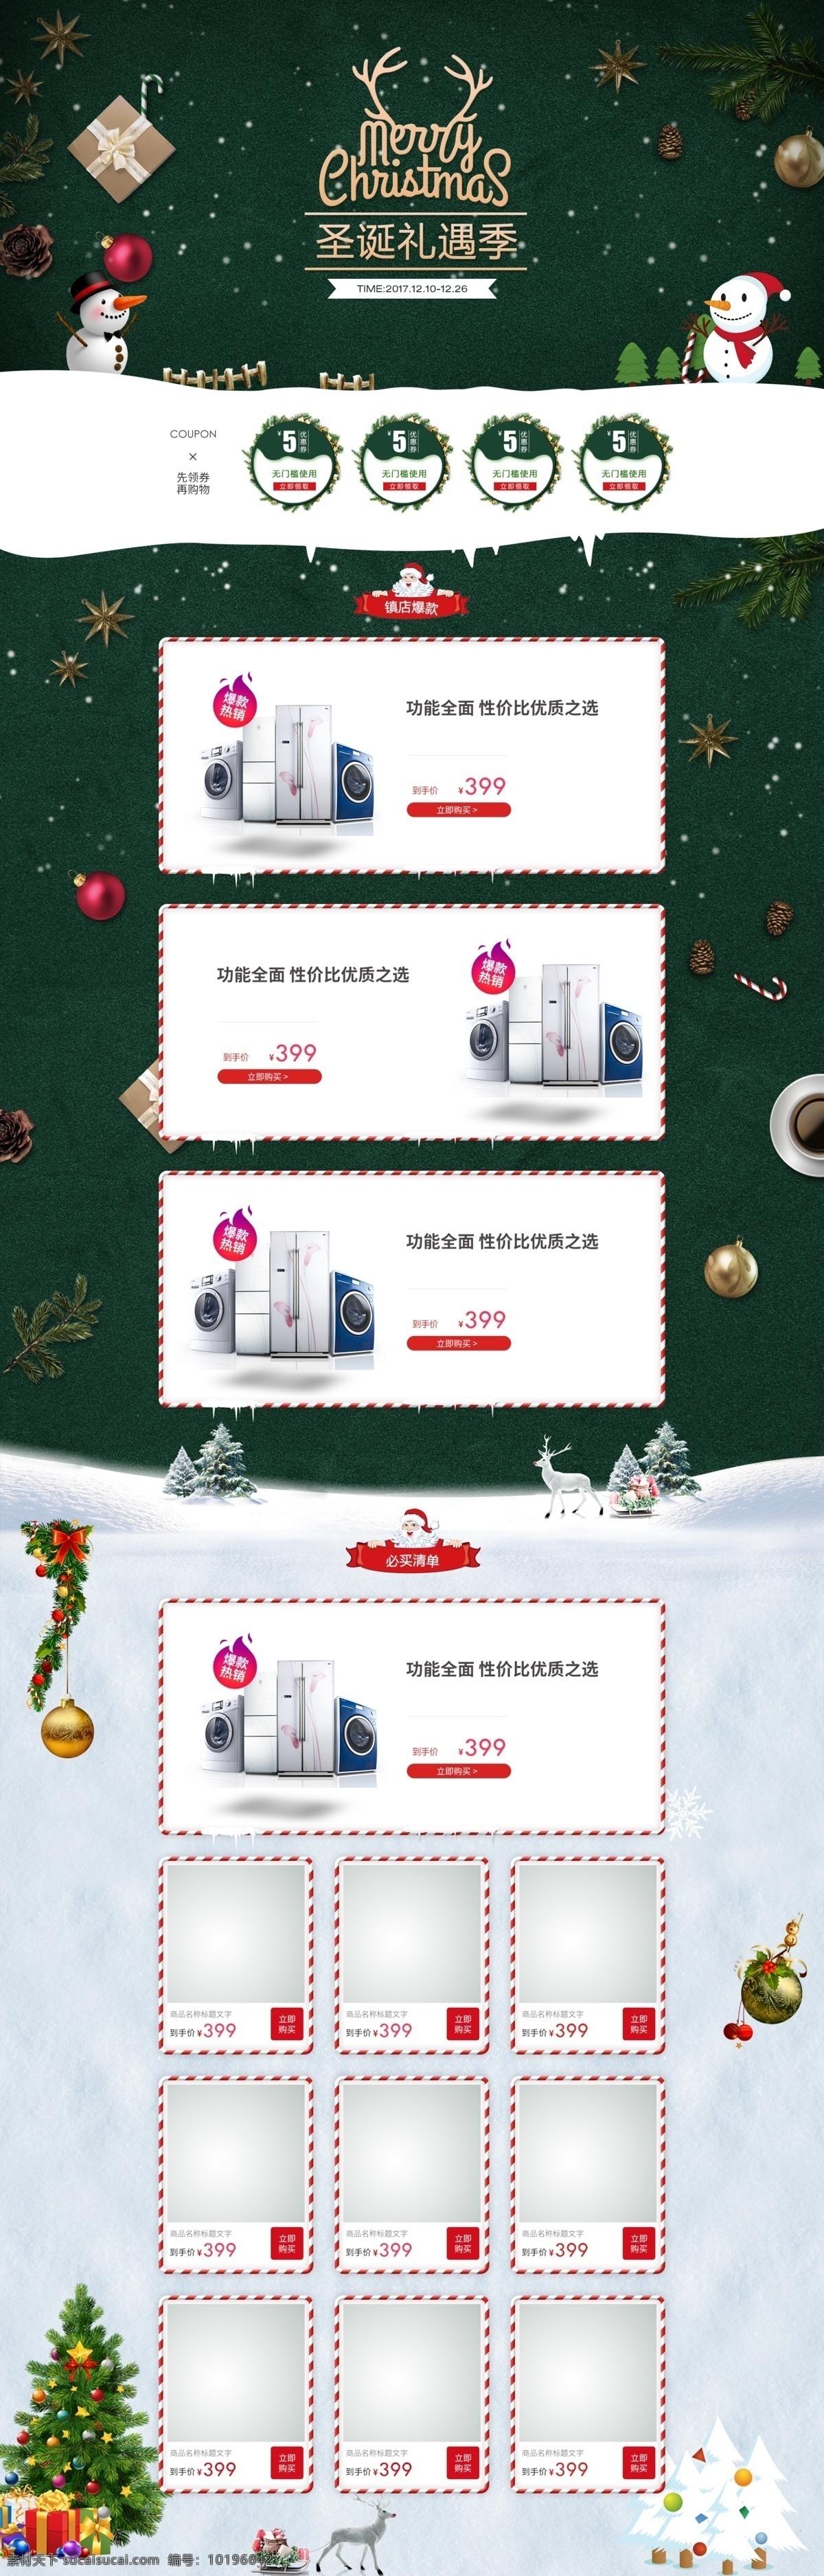 淘宝 天猫 圣诞 家用电器 数码产品 促销 首页 冰箱 圣诞促销海报 圣诞节优惠券 圣诞老人 圣诞礼遇 圣诞球 圣诞雪人 松果 洗衣机